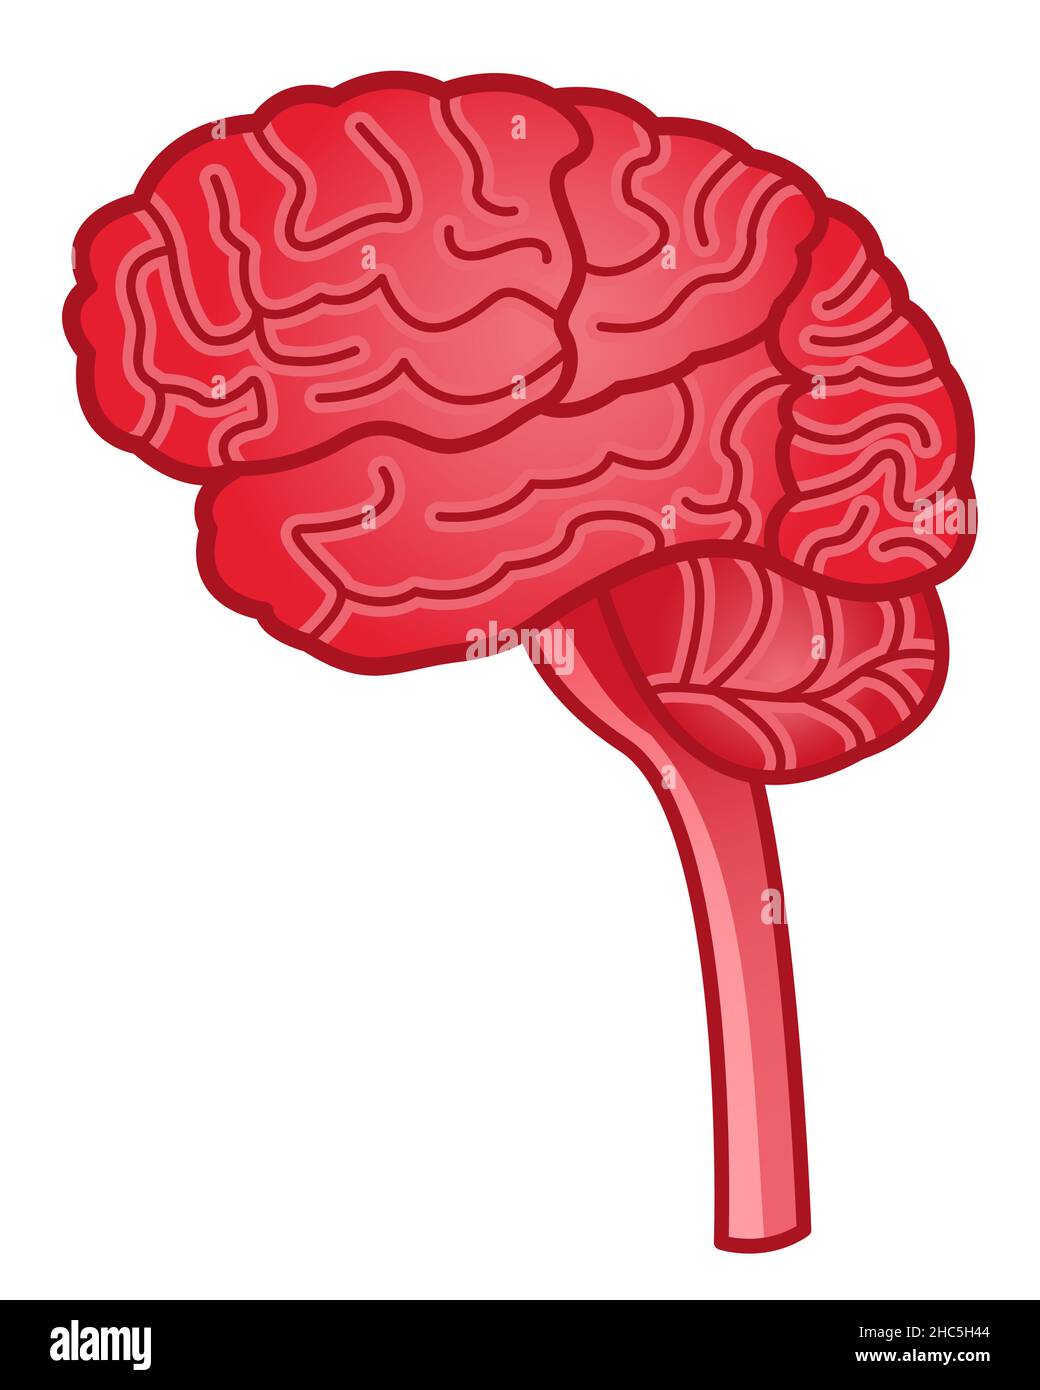 Illustrazione della vista laterale del cervello umano Illustrazione Vettoriale